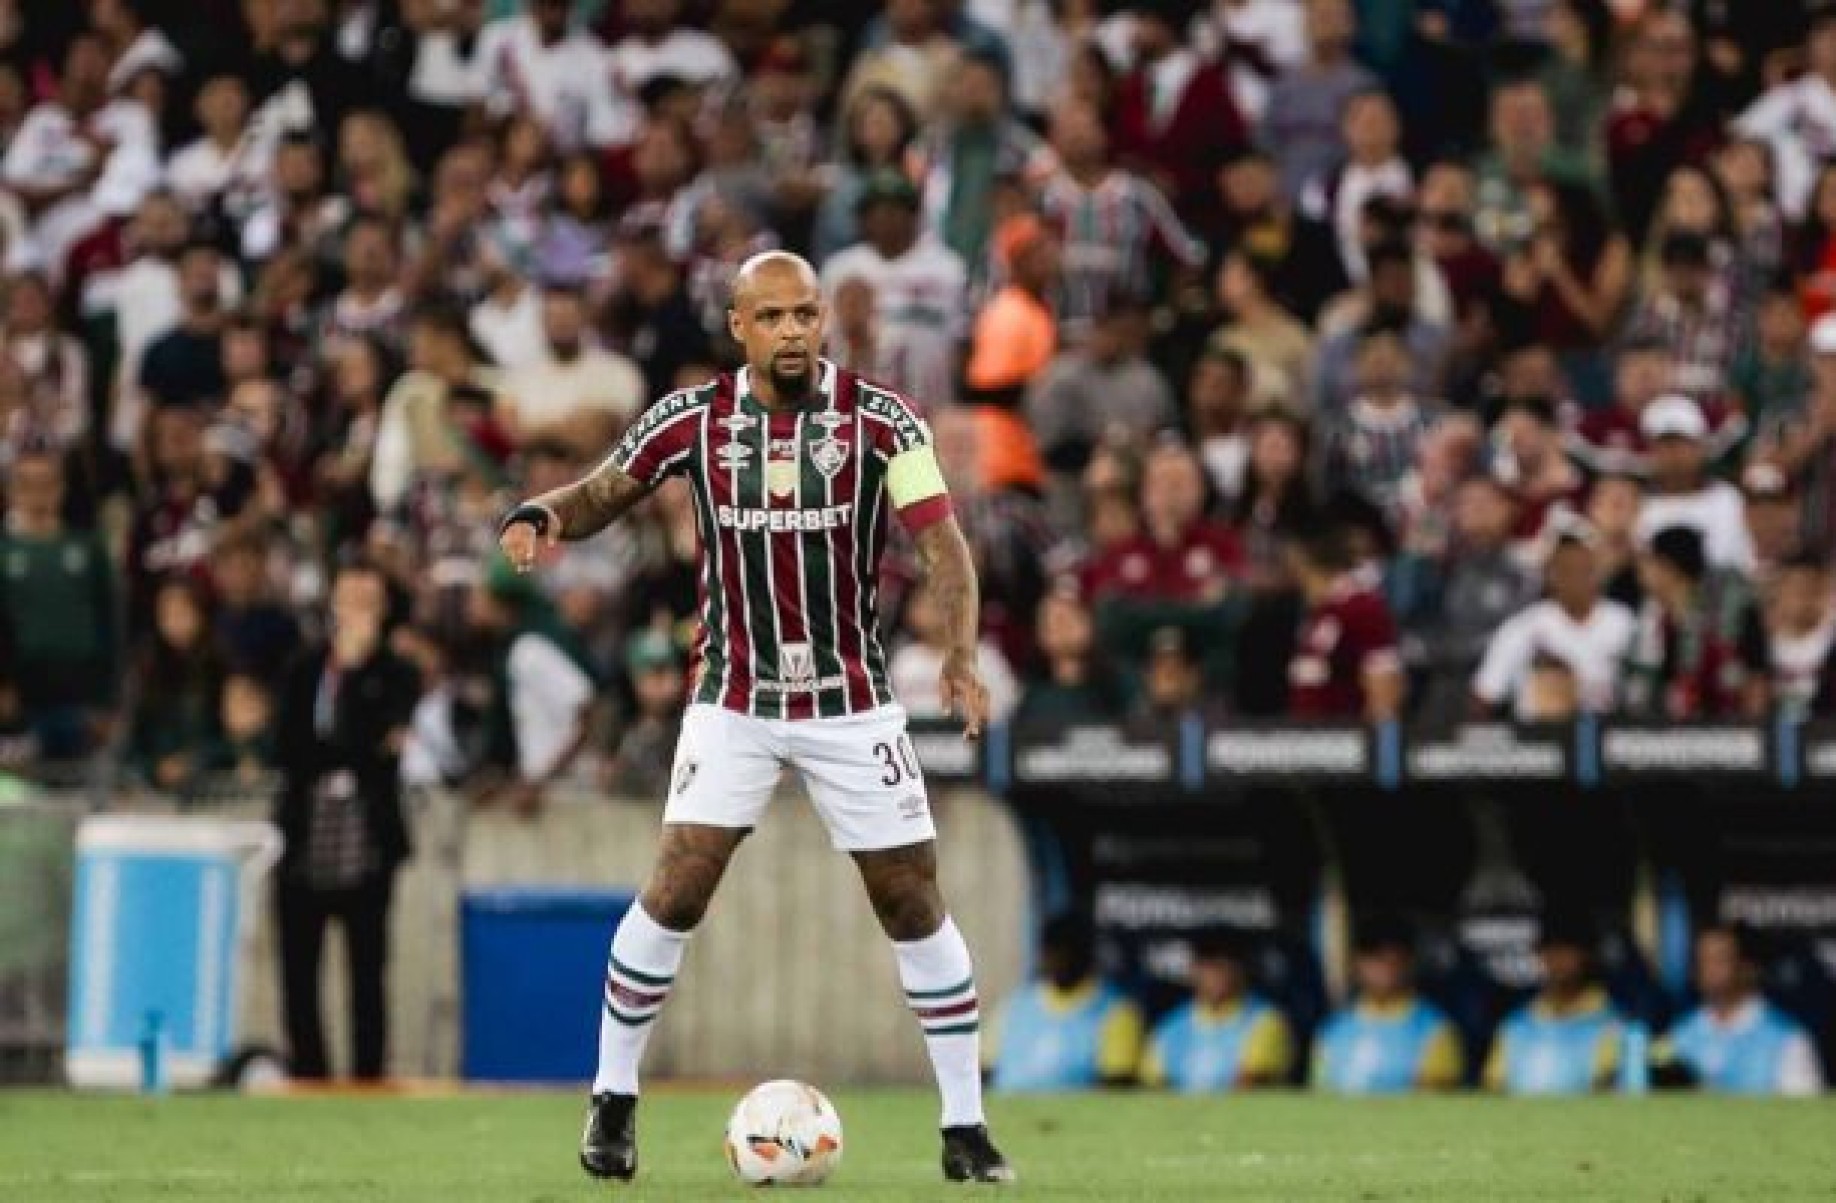 Felipe Melo sofre nova lesão e segue como desfalque no Fluminense